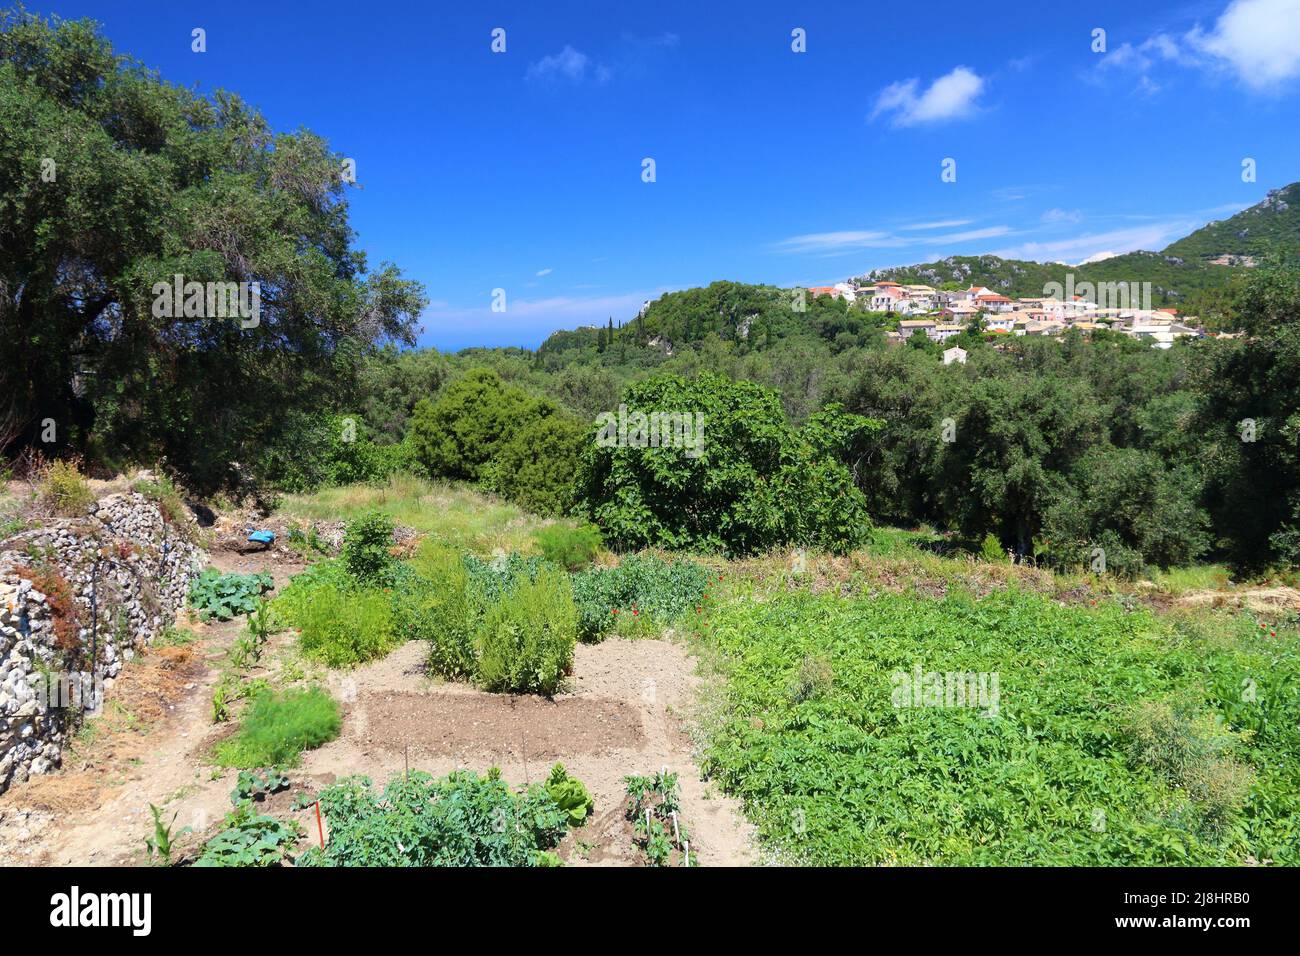 Landwirtschaft in Griechenland - Dorf Makrades auf der Insel Korfu. Kleiner privater Gemüsegarten. Stockfoto